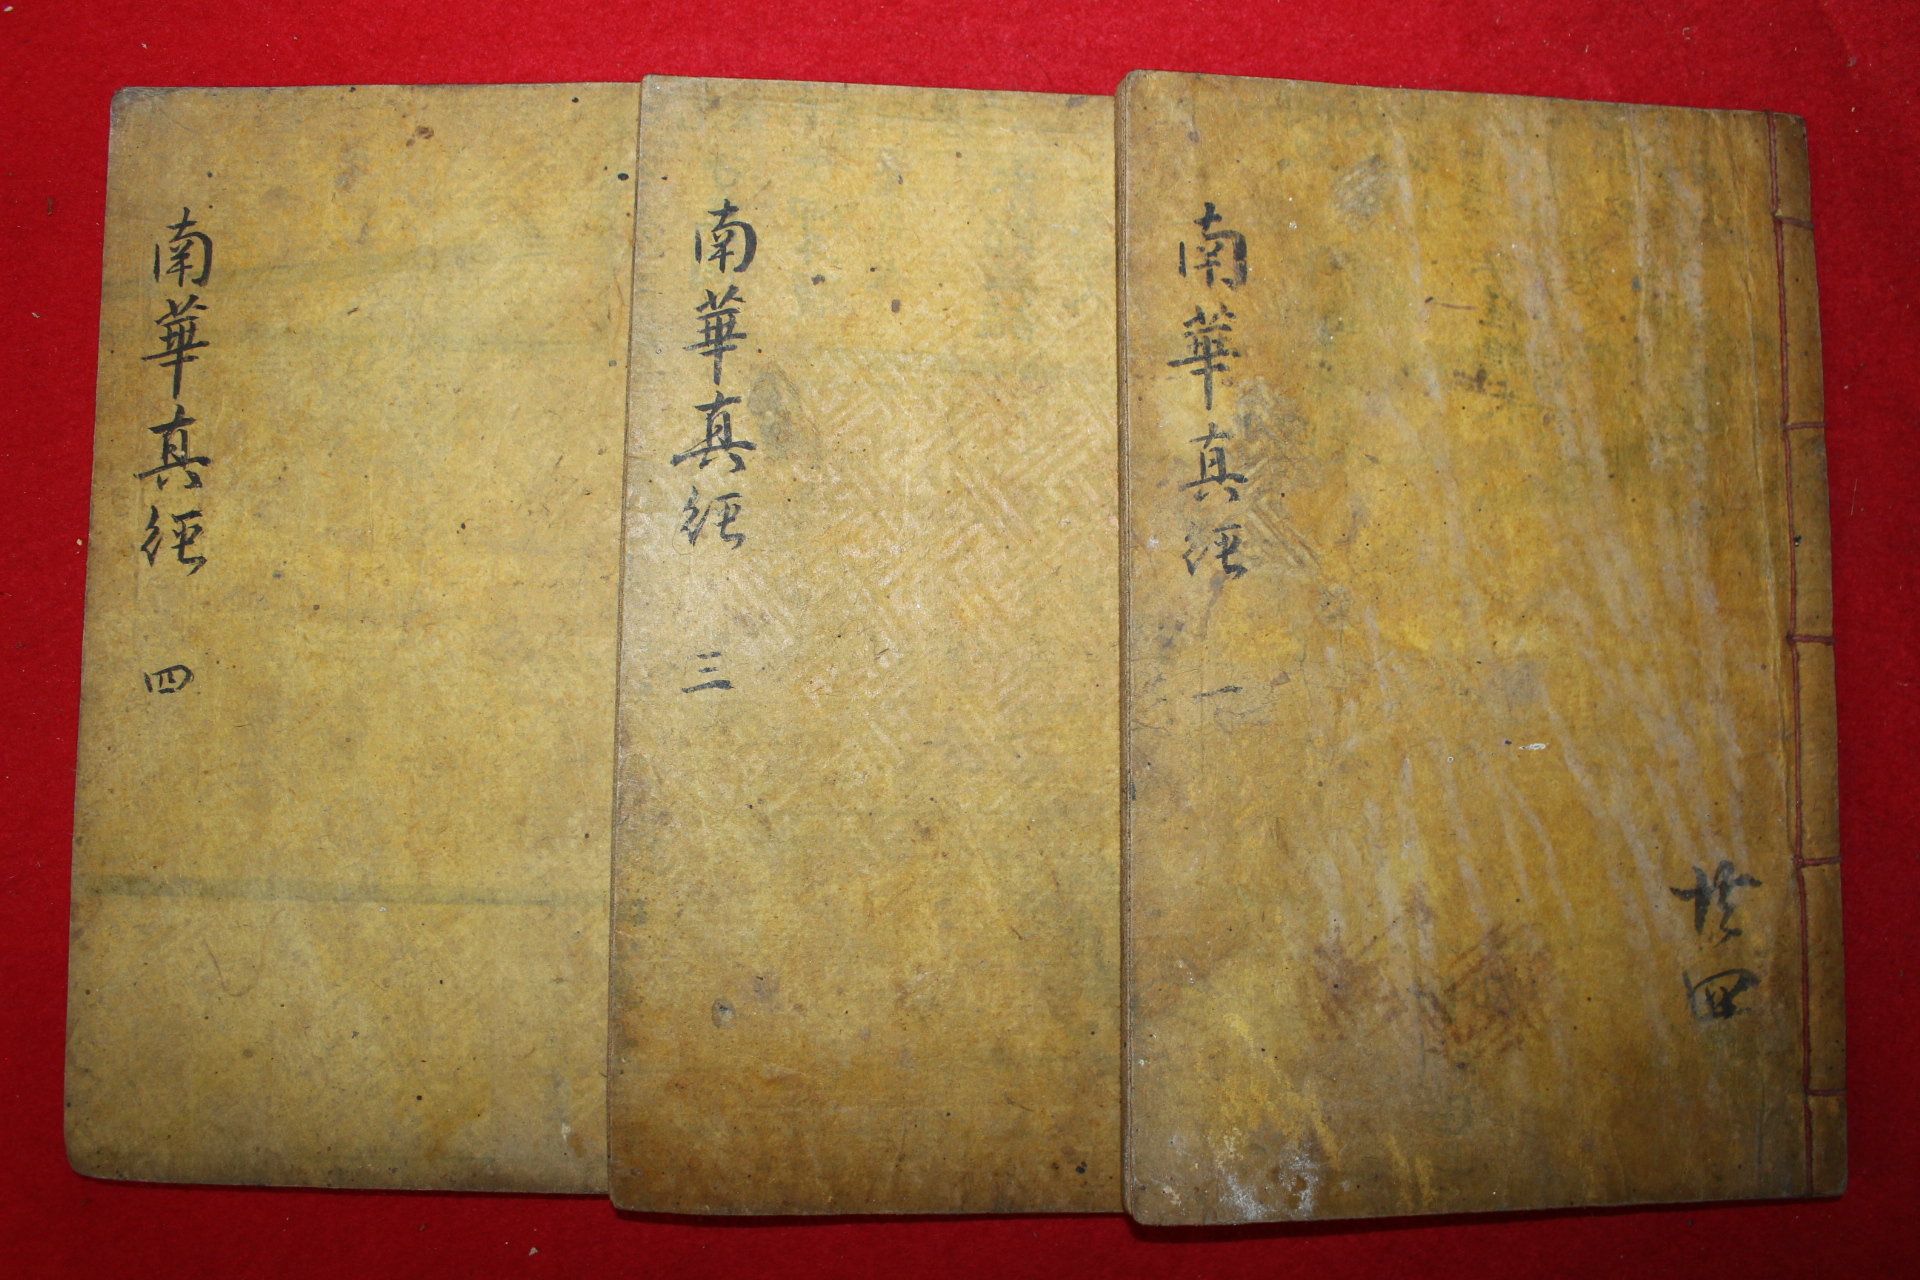 1914년(民國3年) 중국간행 장자남화경(莊子南華經) 3책